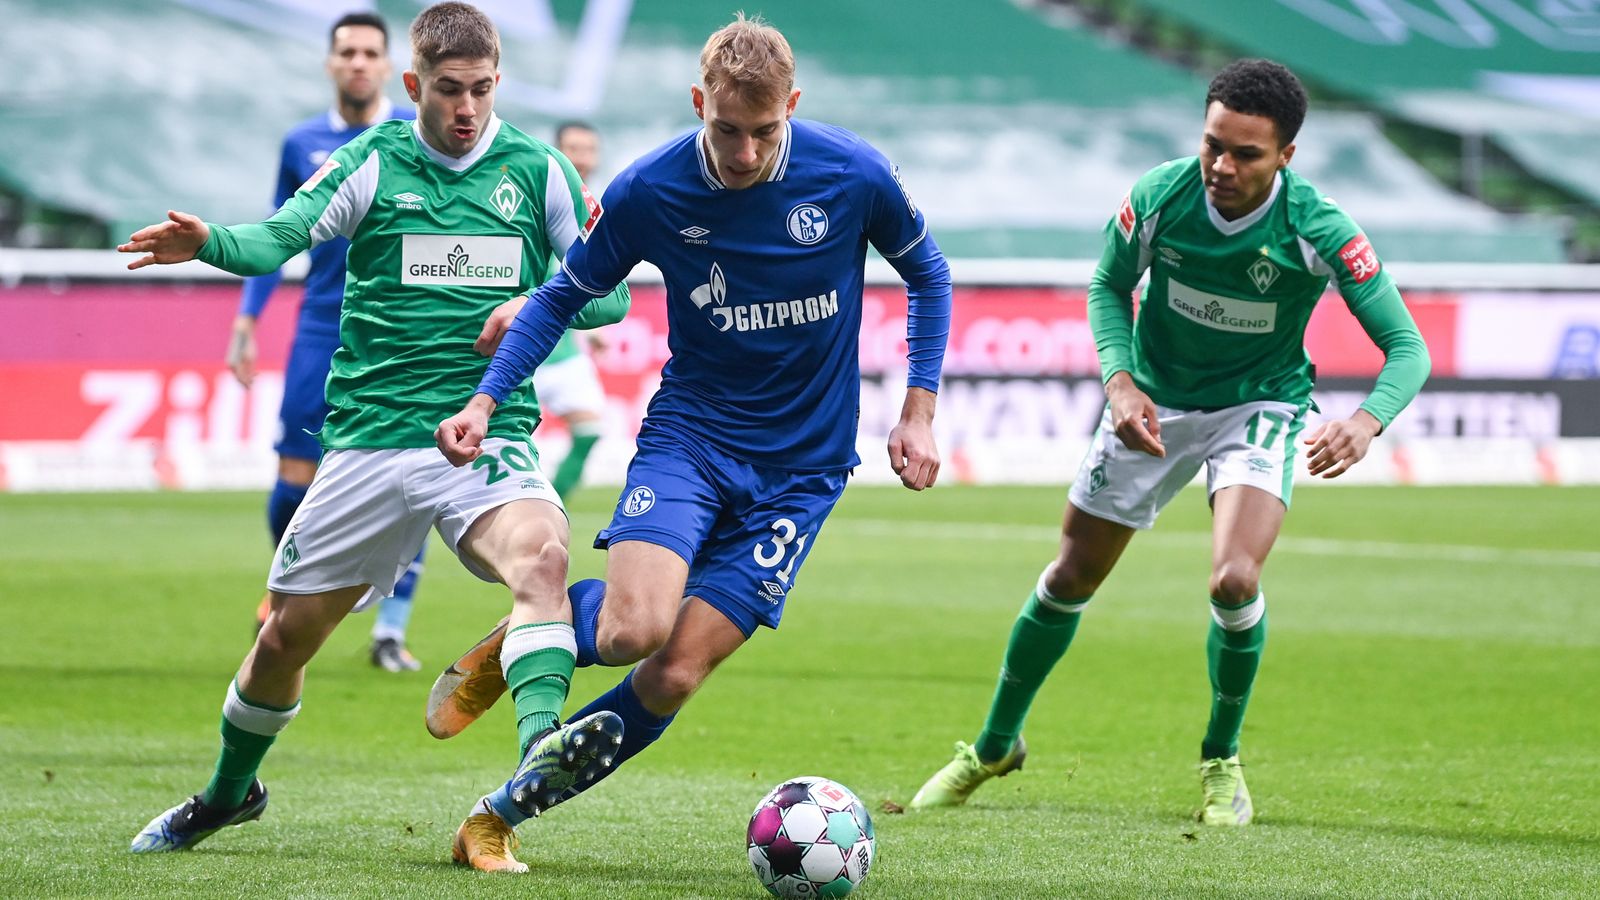 Spielbericht | Bremen - Schalke 04 | 30.01.2021